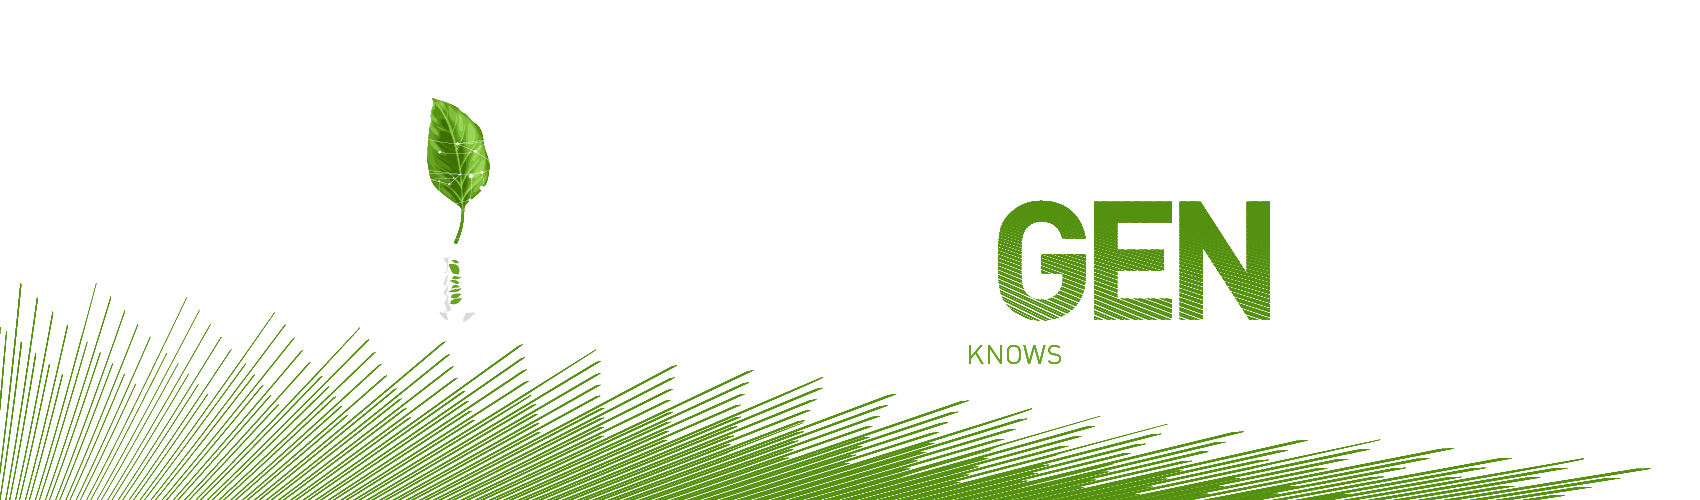 Green Gen